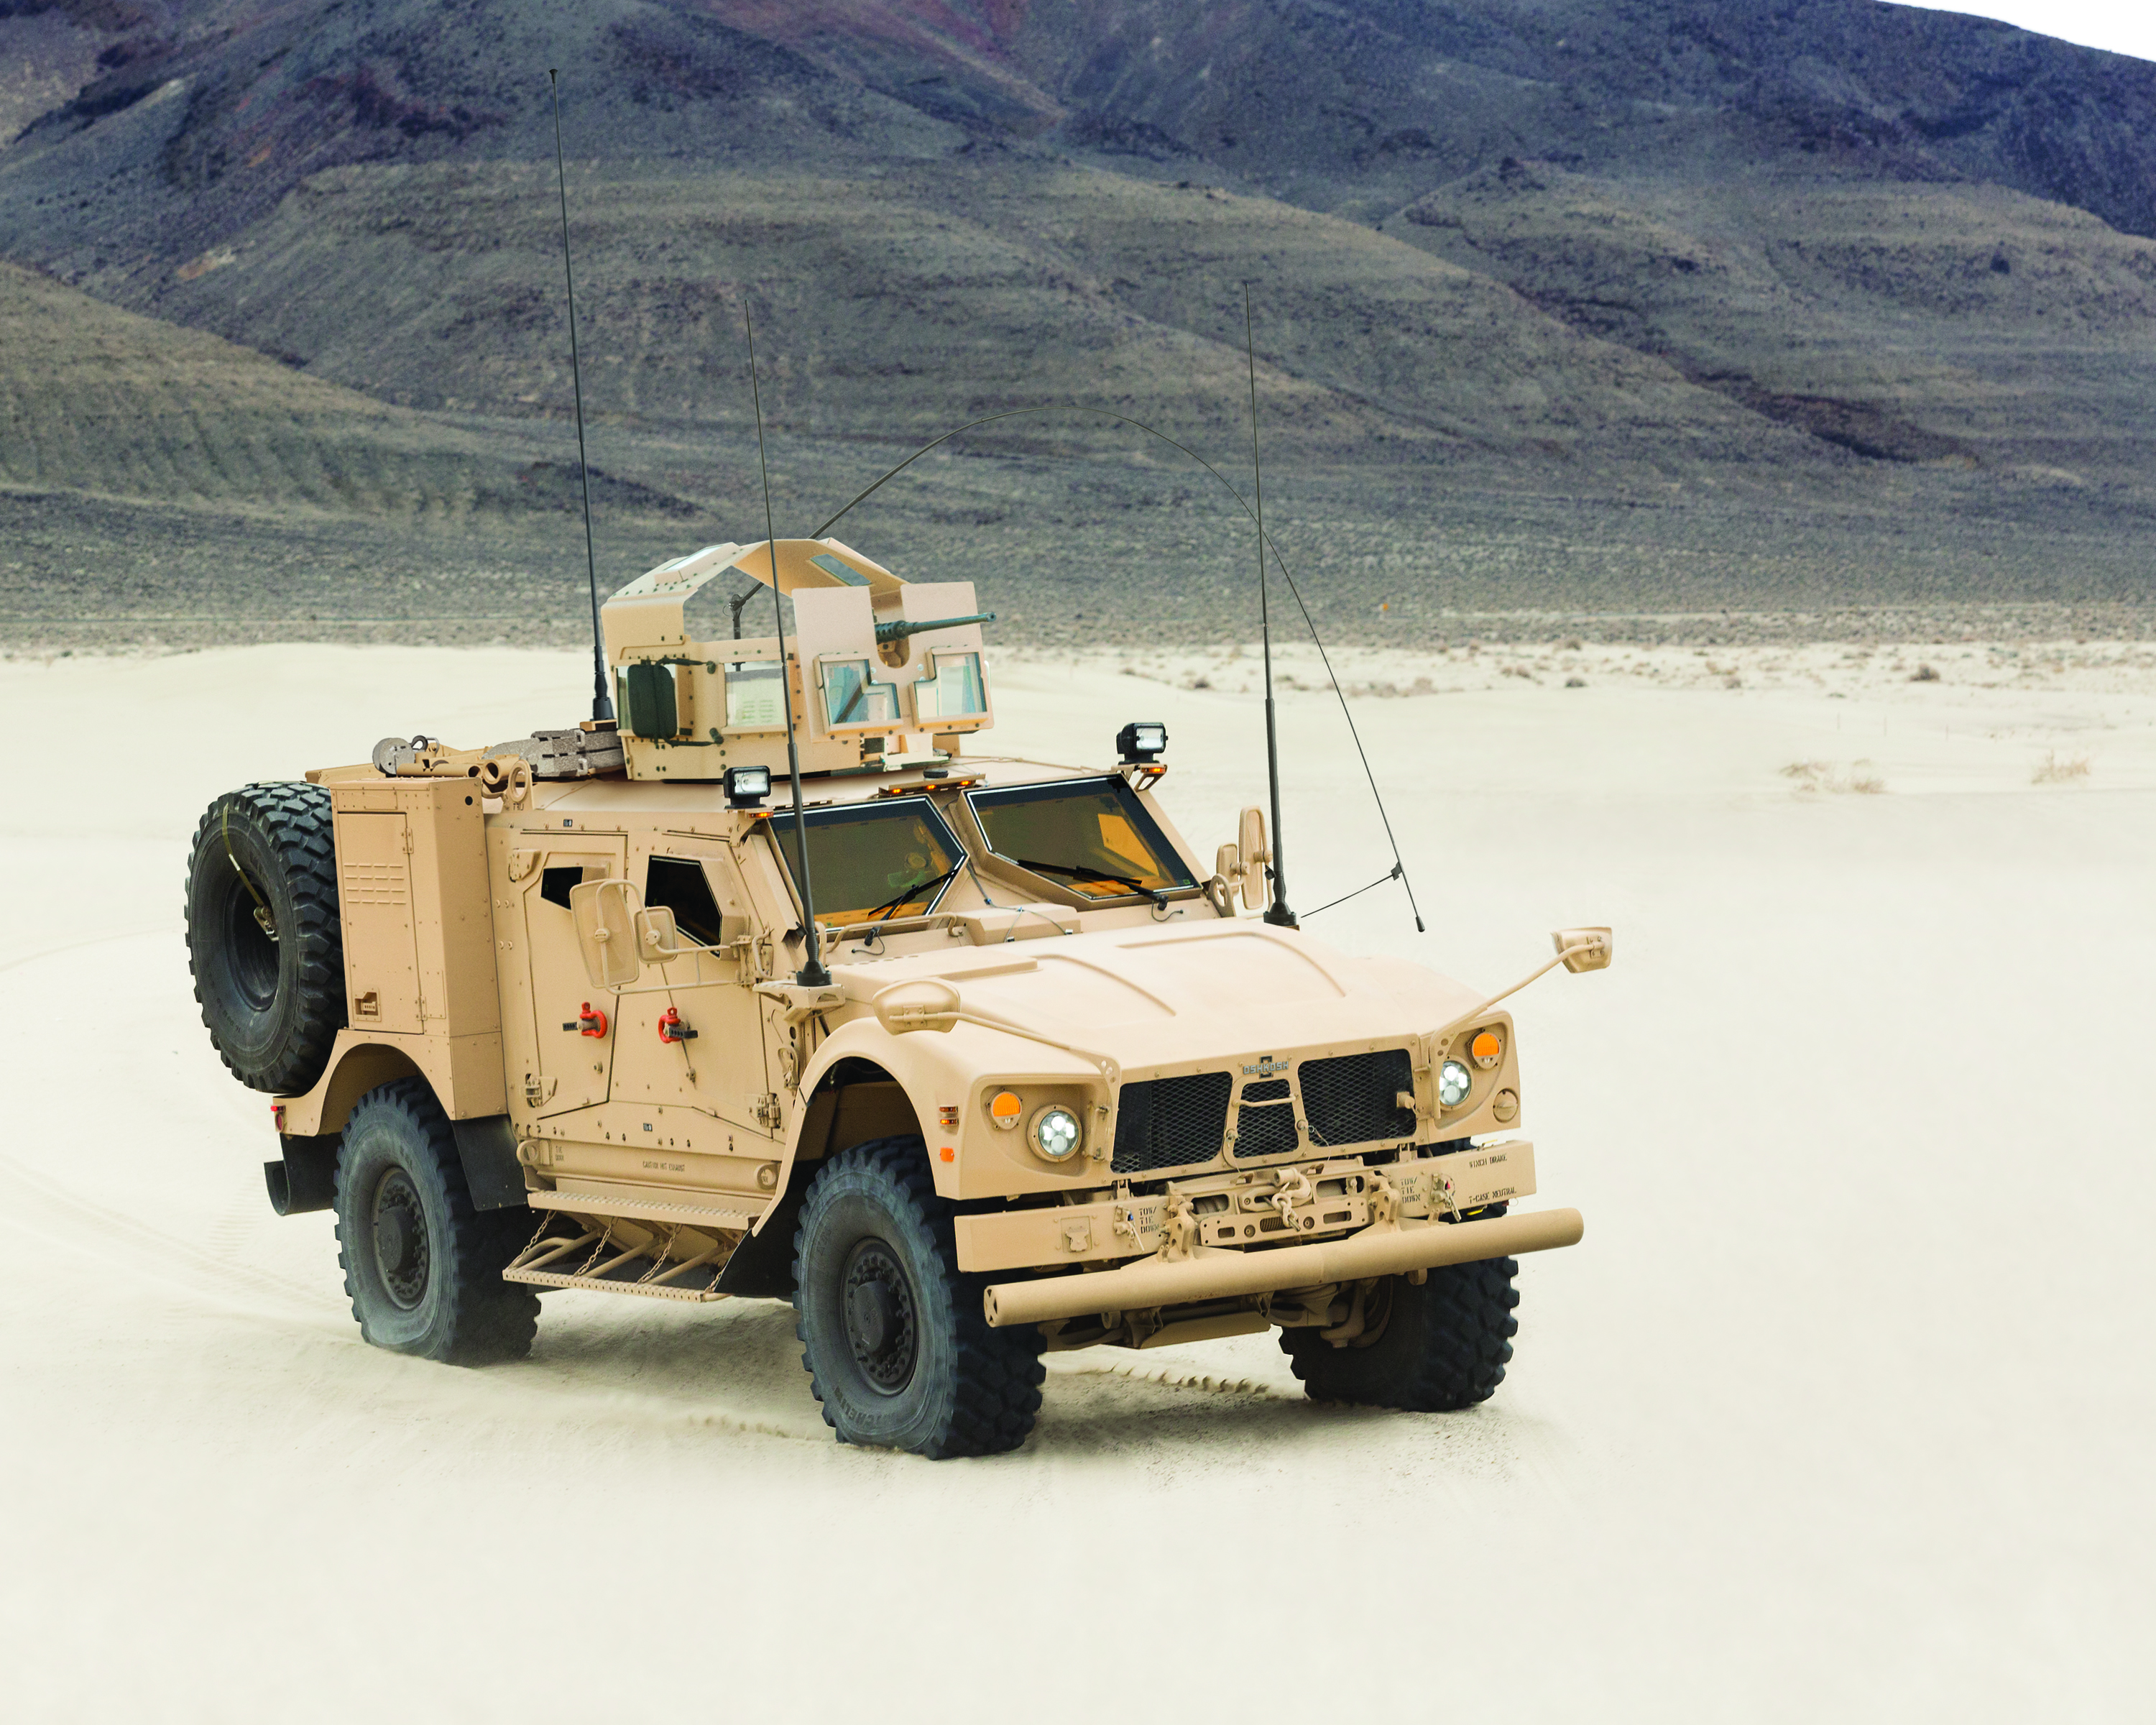 Oshkosh Defense M-ATV Assault model by Oshkosh Defense